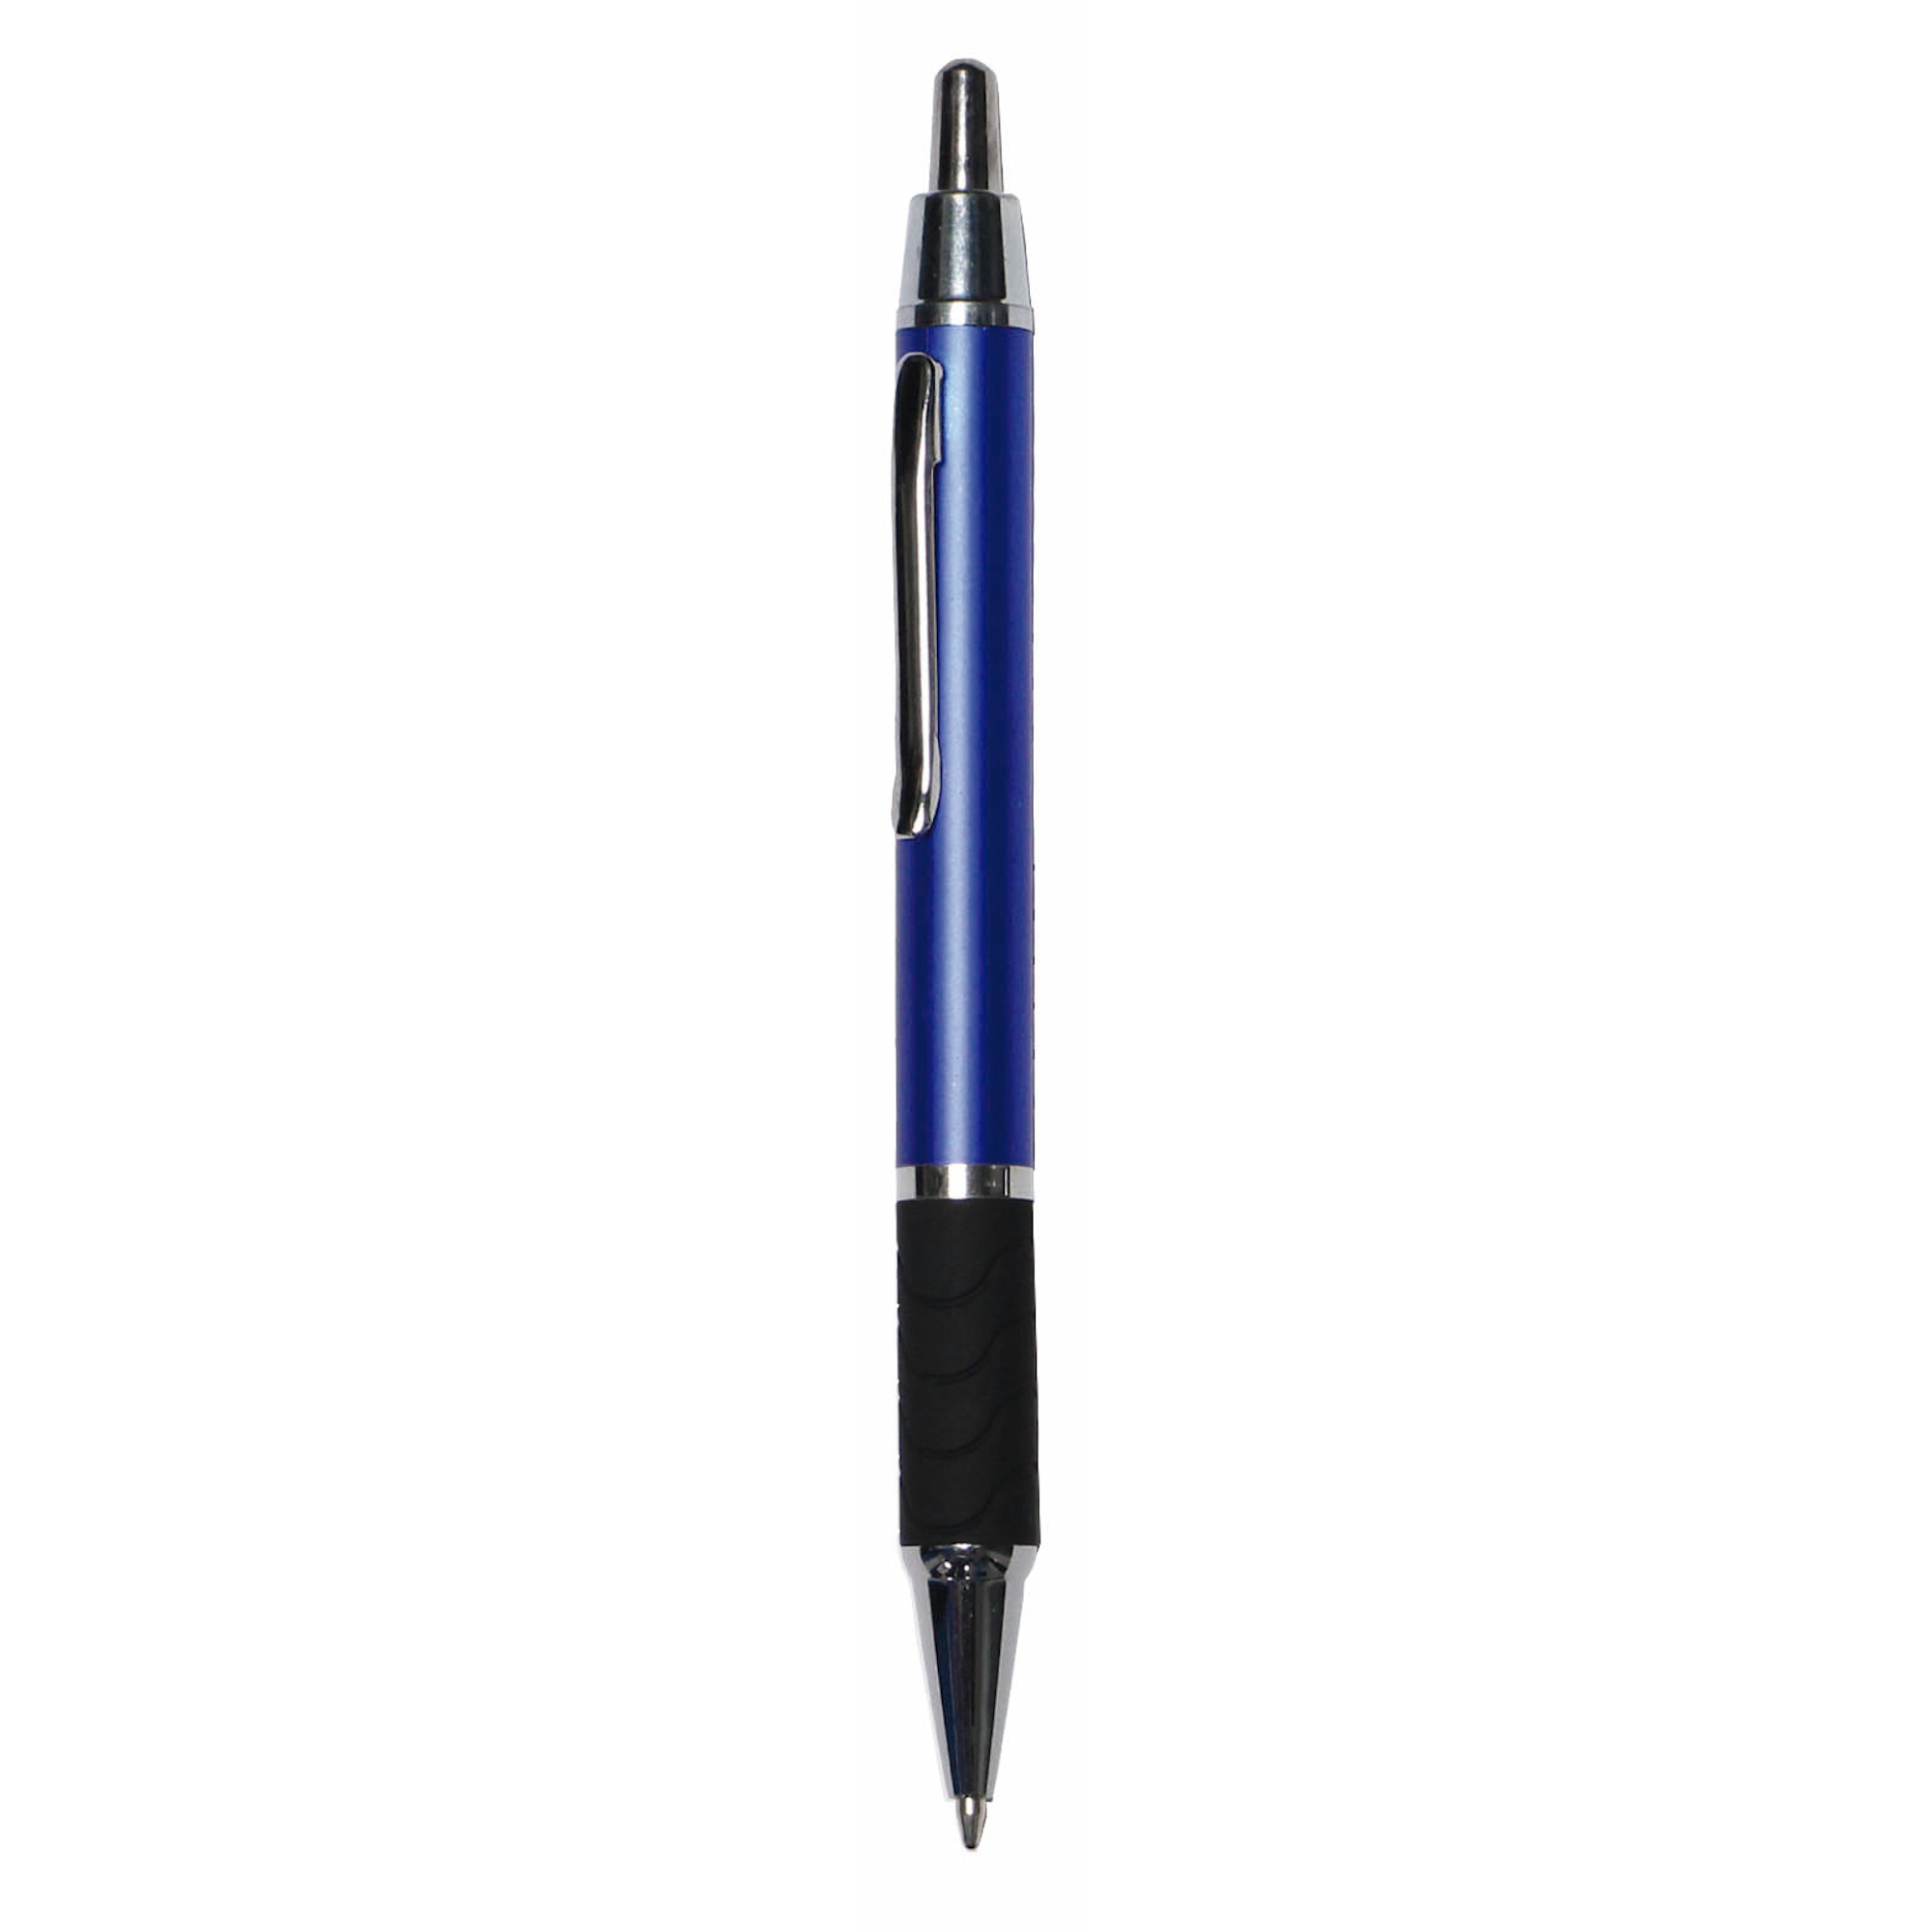 Bolígrafo Tamesis
Color azul